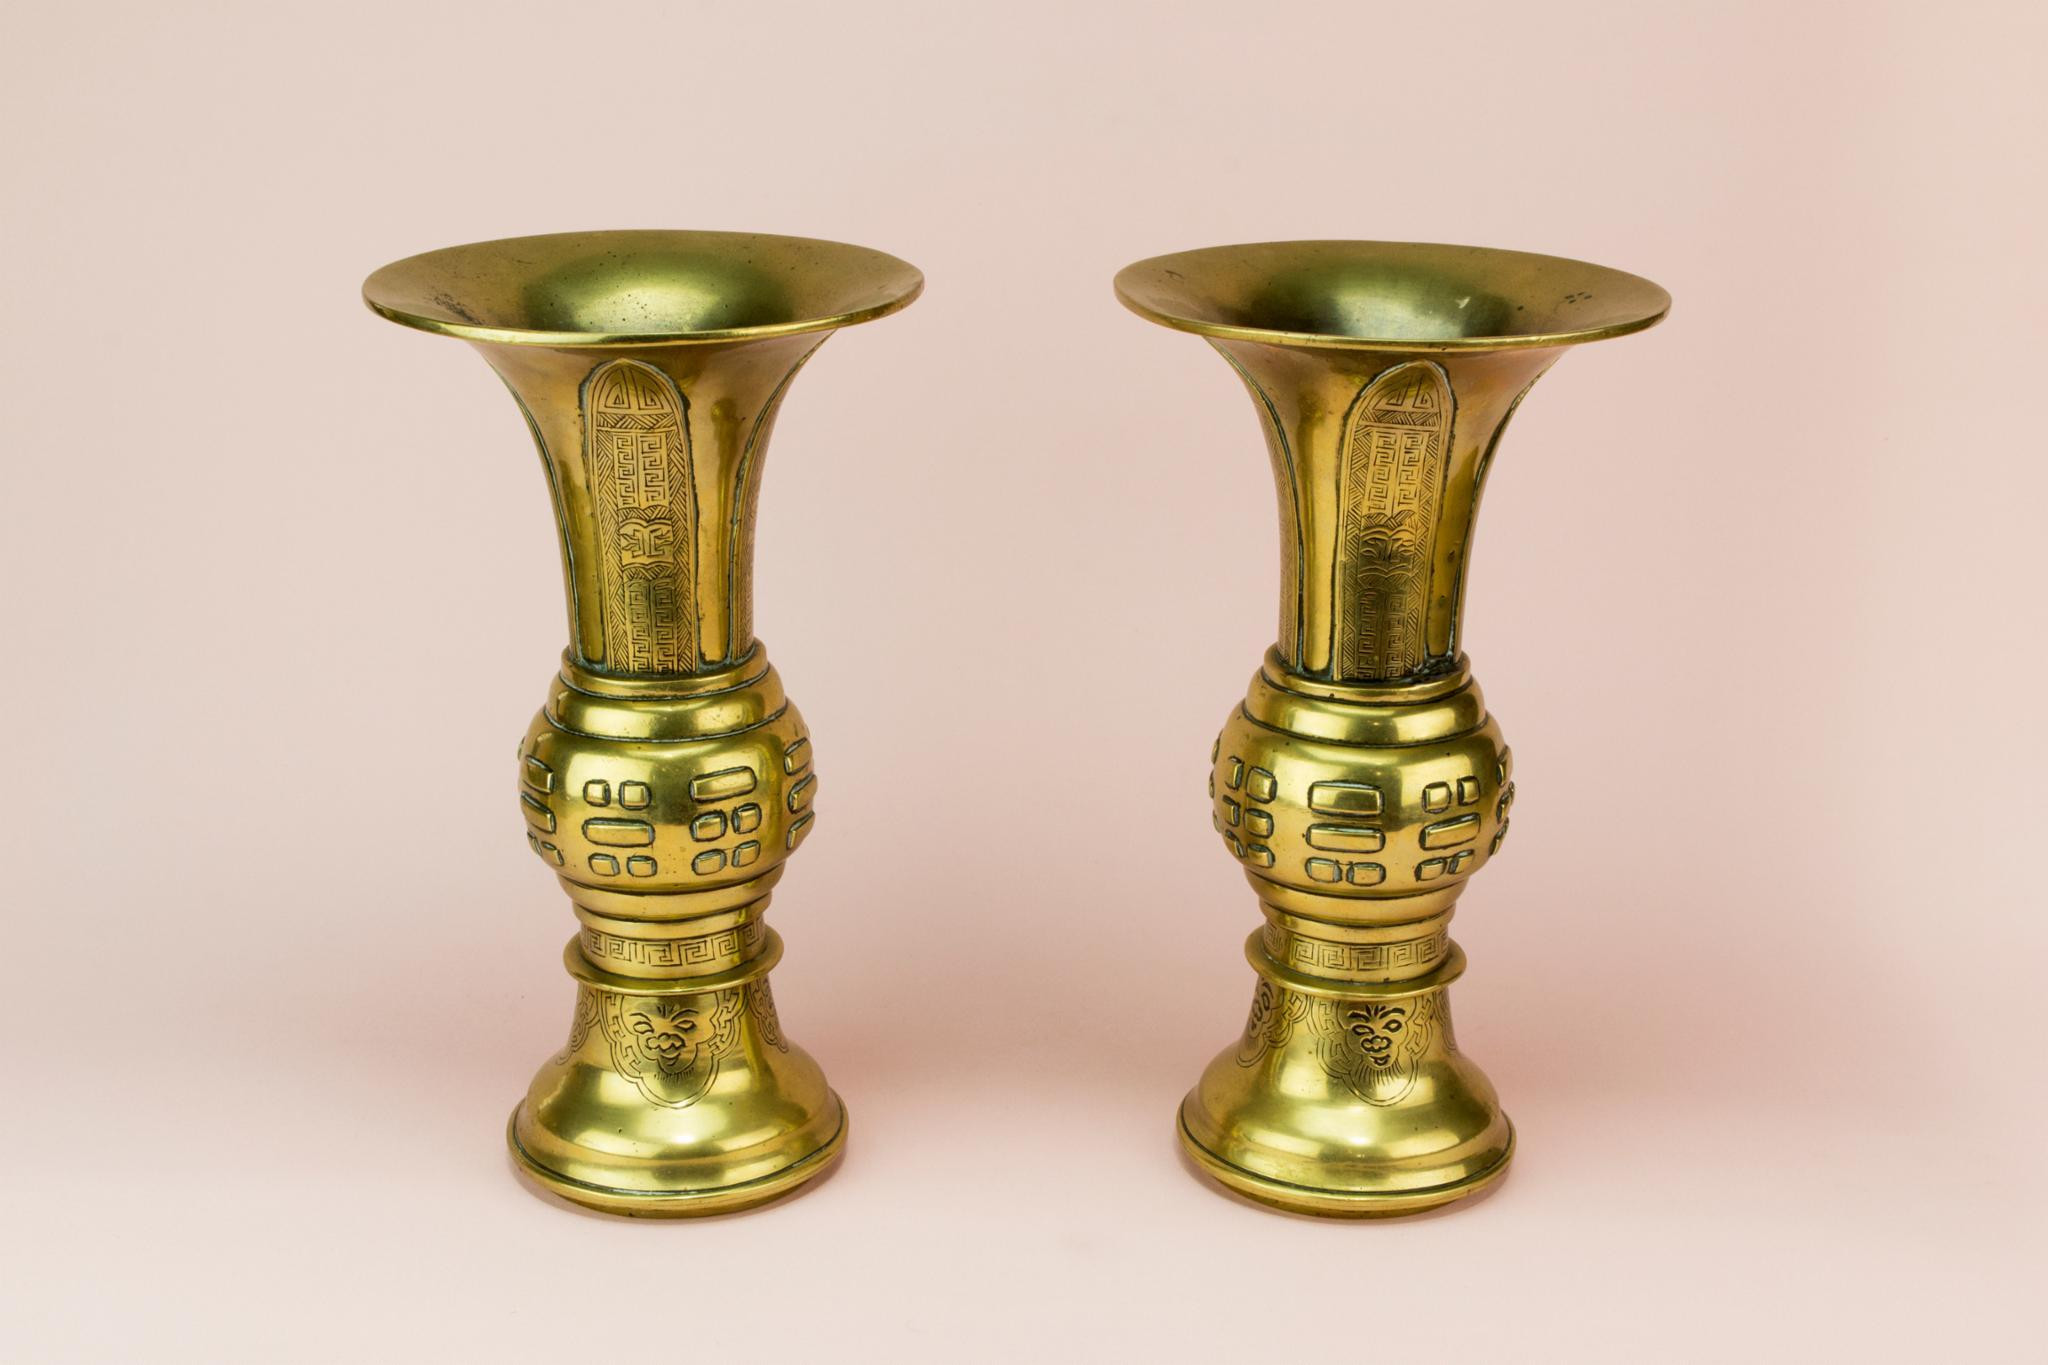 10 Recommended Vintage Brass Vase 2024 free download vintage brass vase of 2 gu shaped brass vases chinese 19th century late 19th century inside 2 gu shaped brass vases chinese 19th century